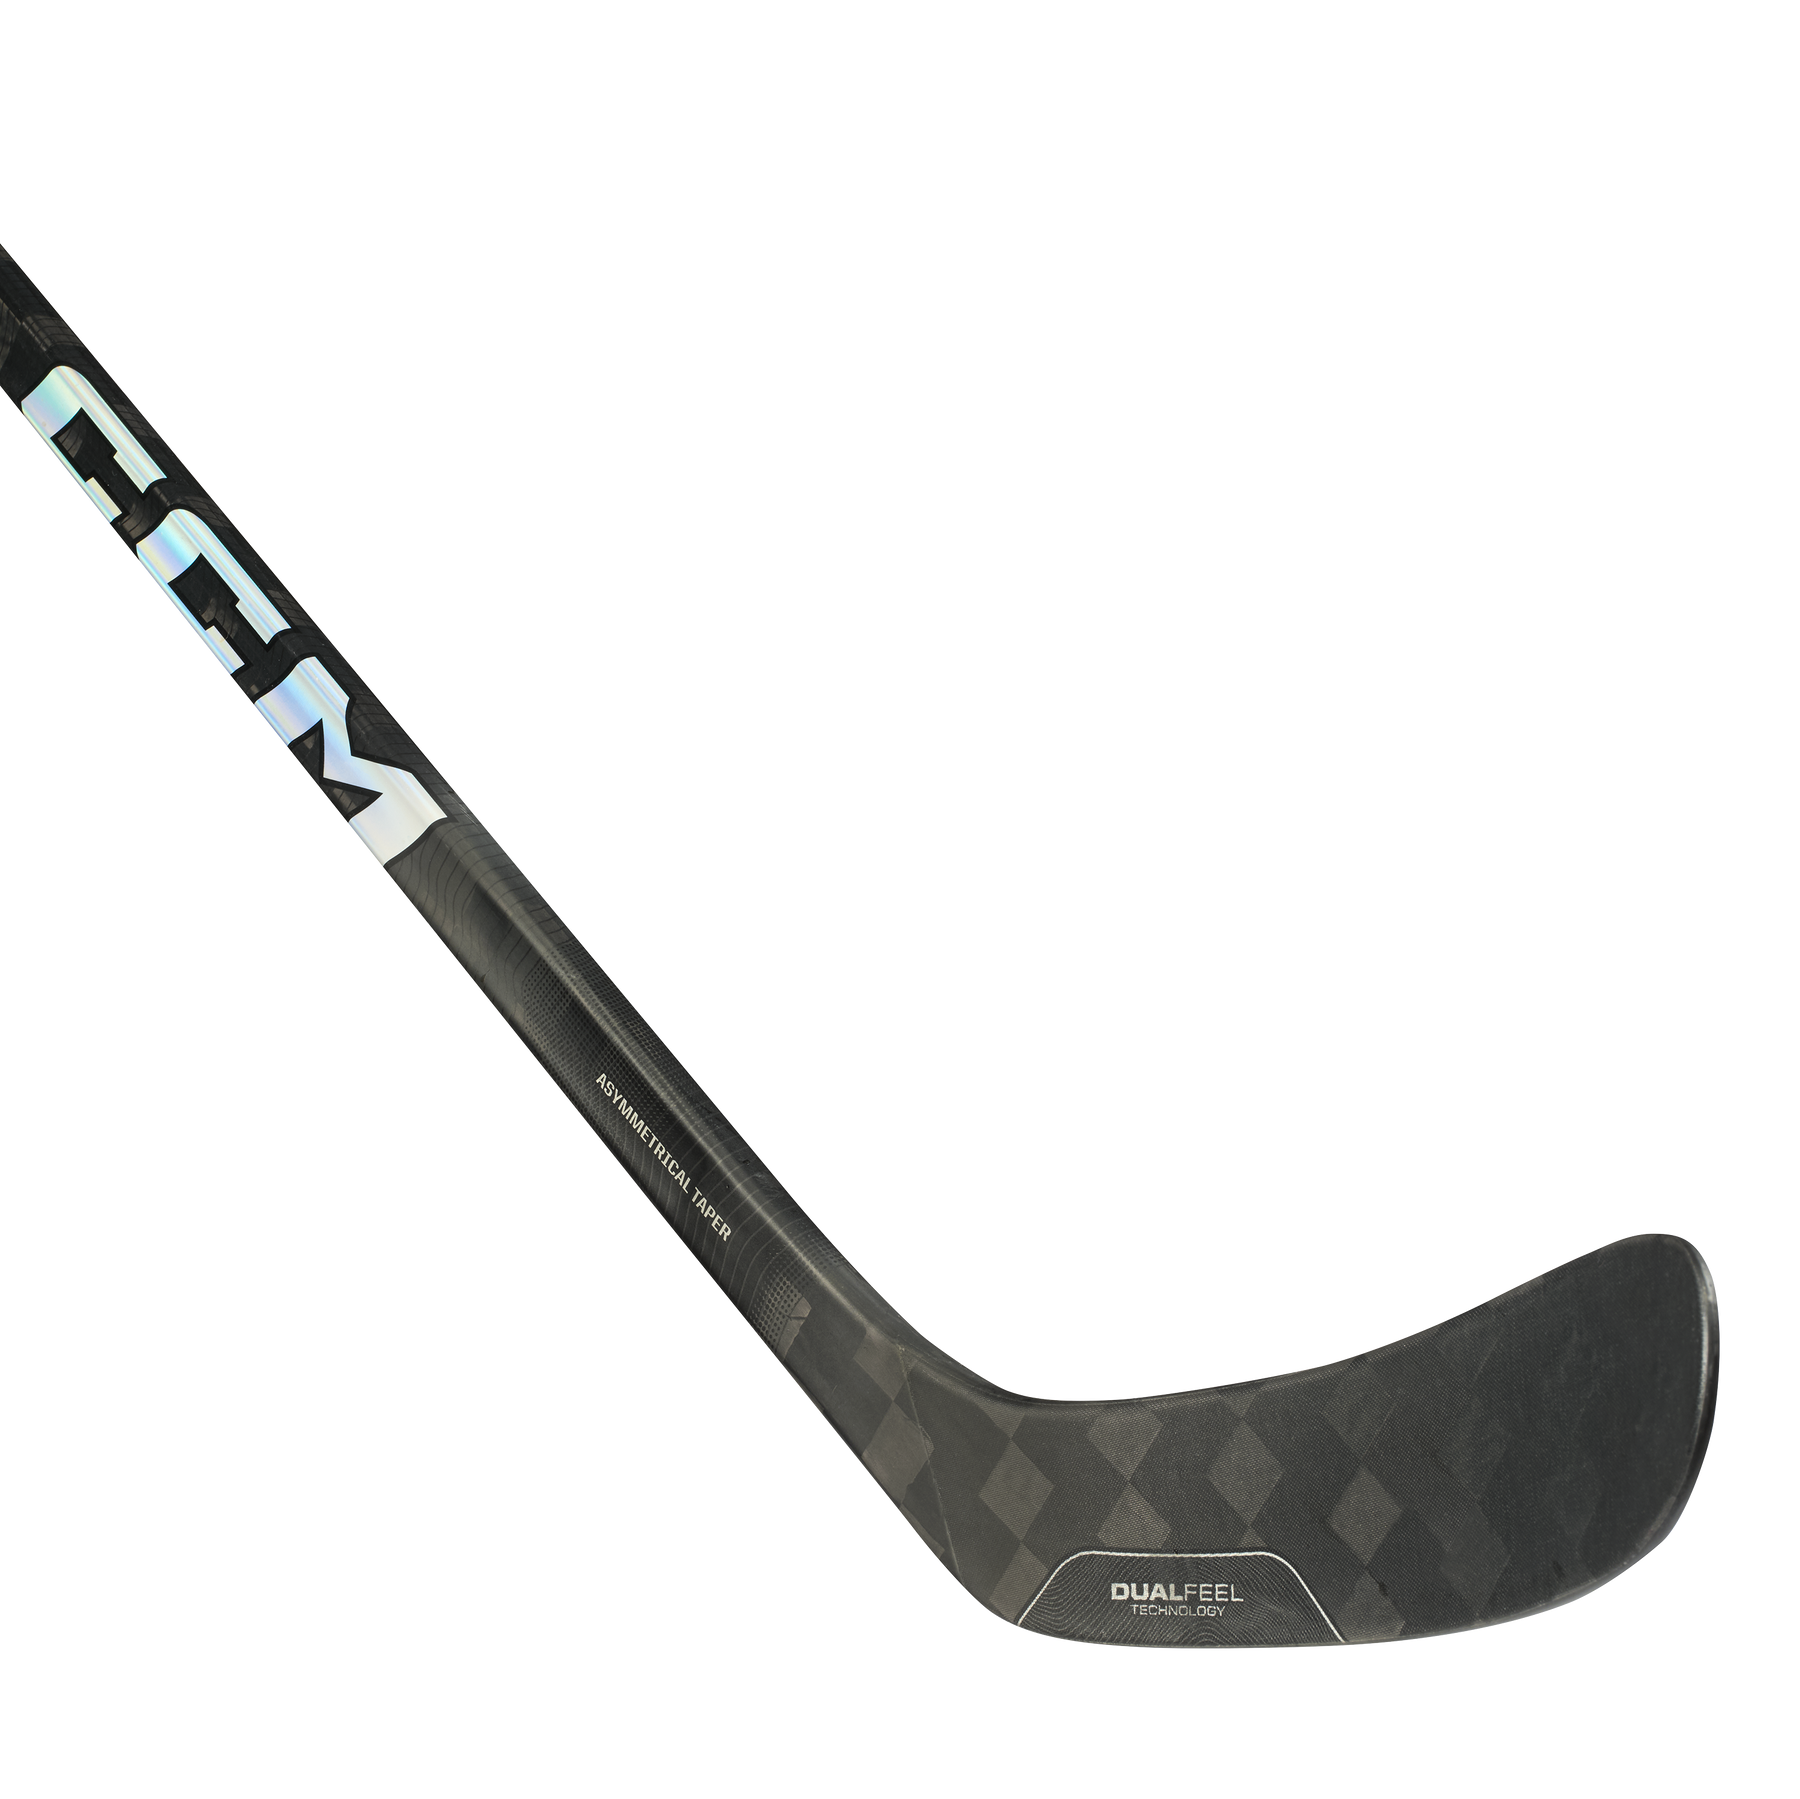 CCM Trigger 8 Pro Chrome Edition Senior Hockey Stick